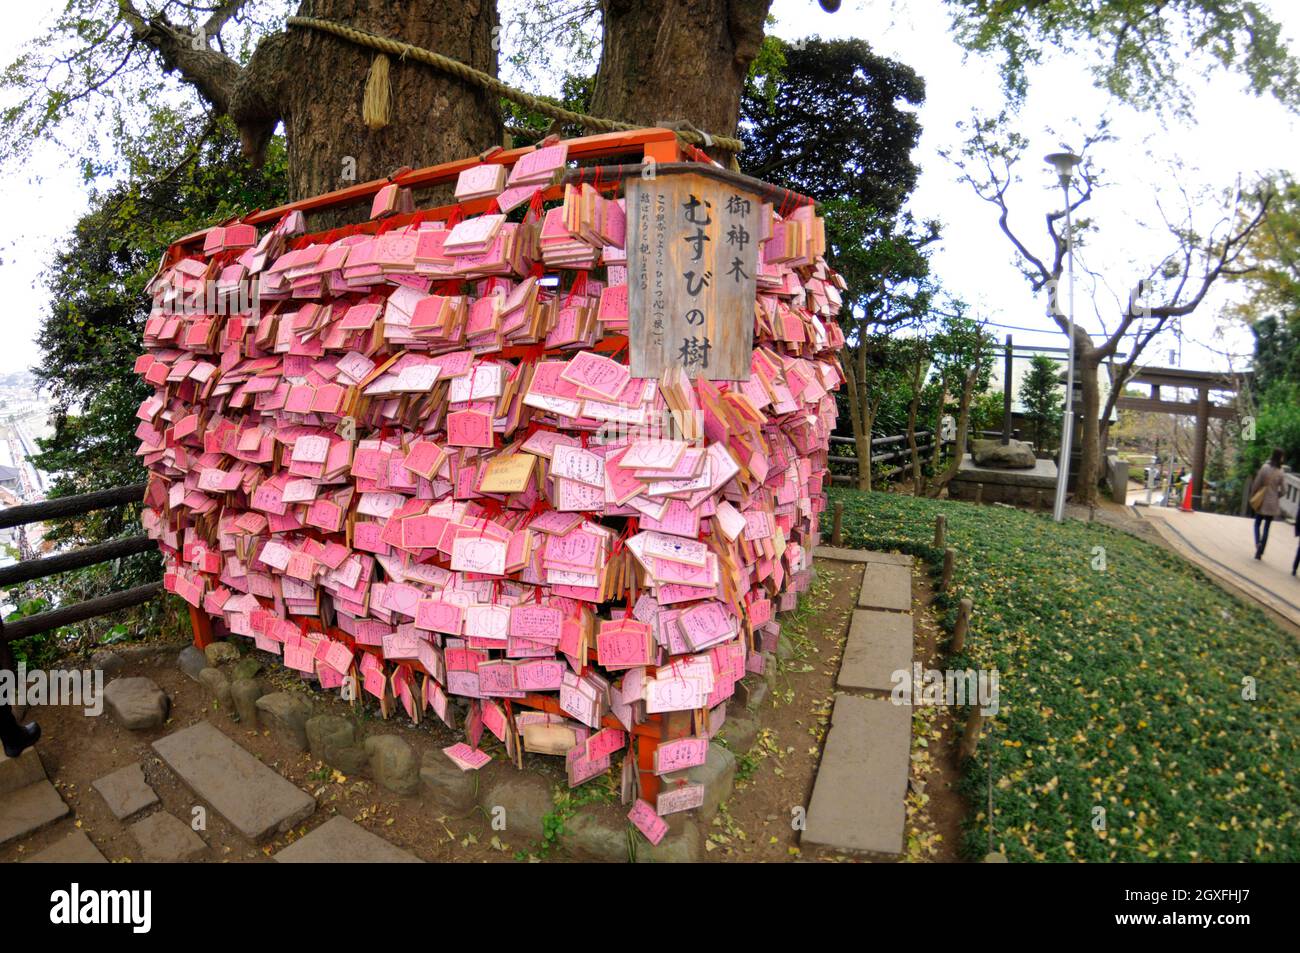 Placche di legno con preghiere e desideri nel Santuario di Enoshima, Enoshima, Giappone Foto Stock